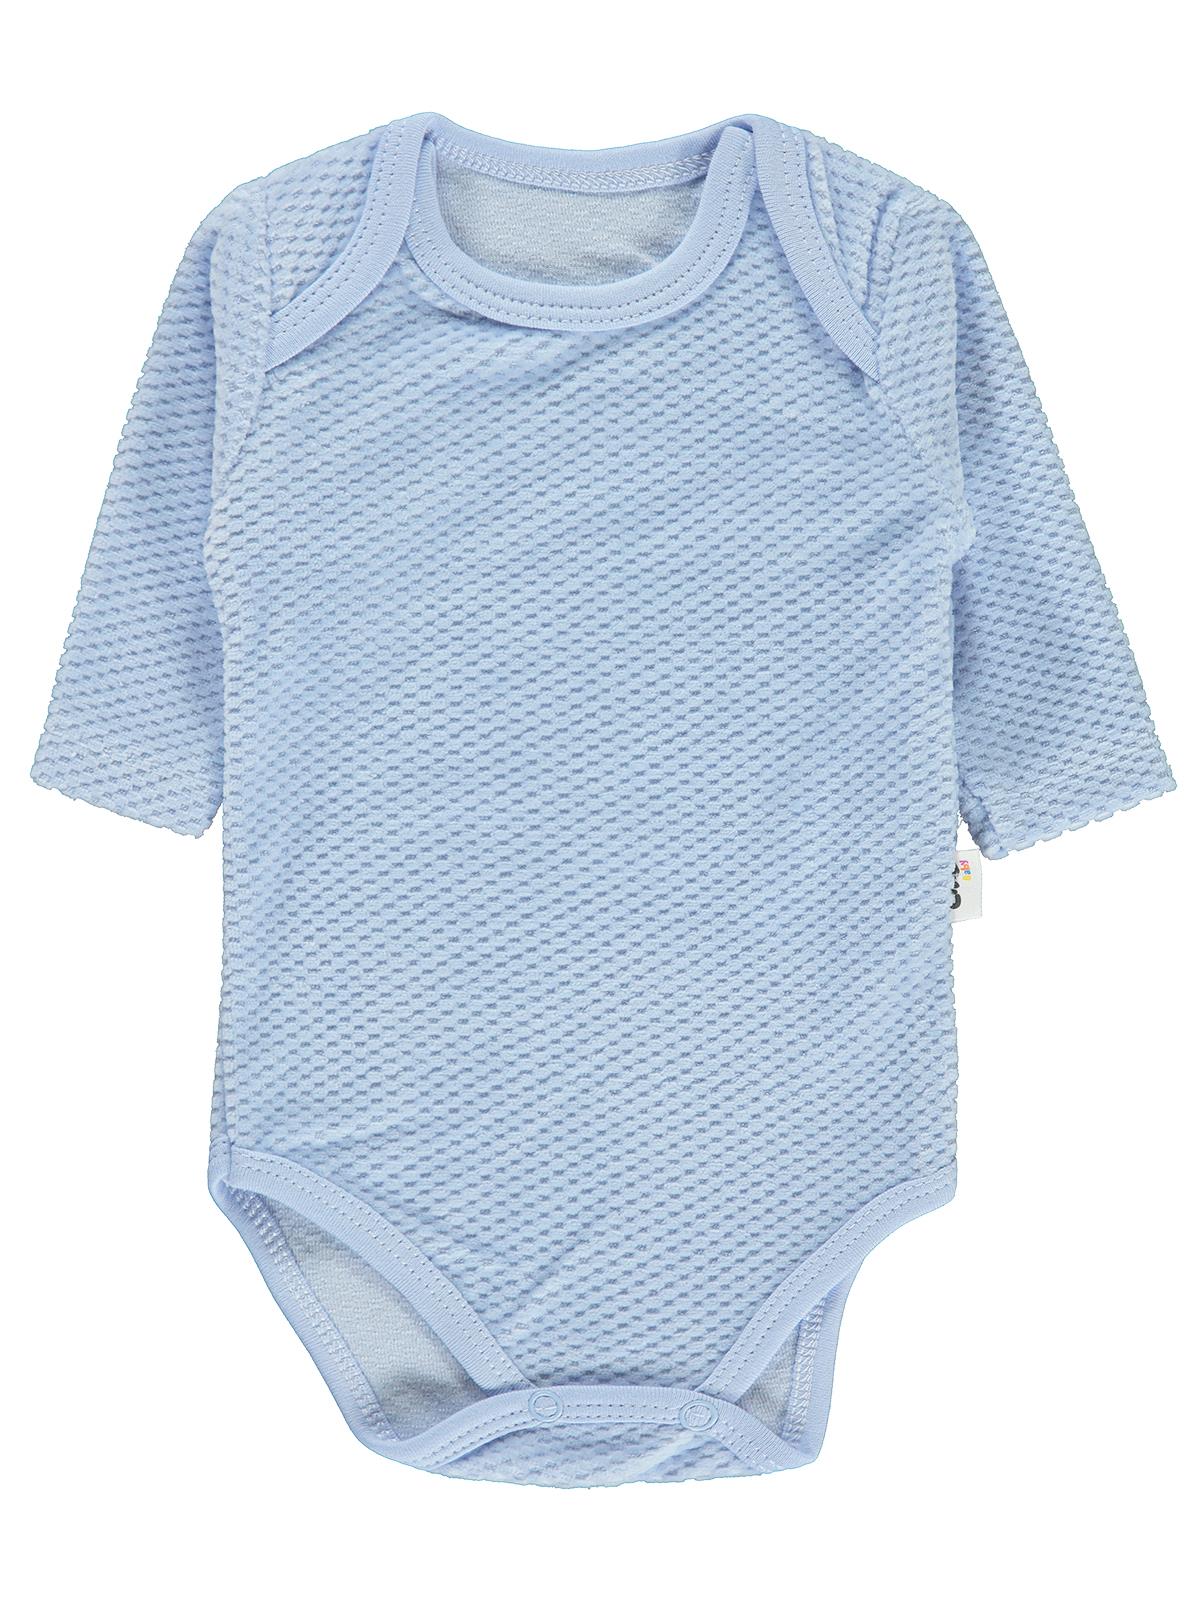 Civil Baby Erkek Bebek Çıtçıtlı Badi 0-12 Ay Mavi